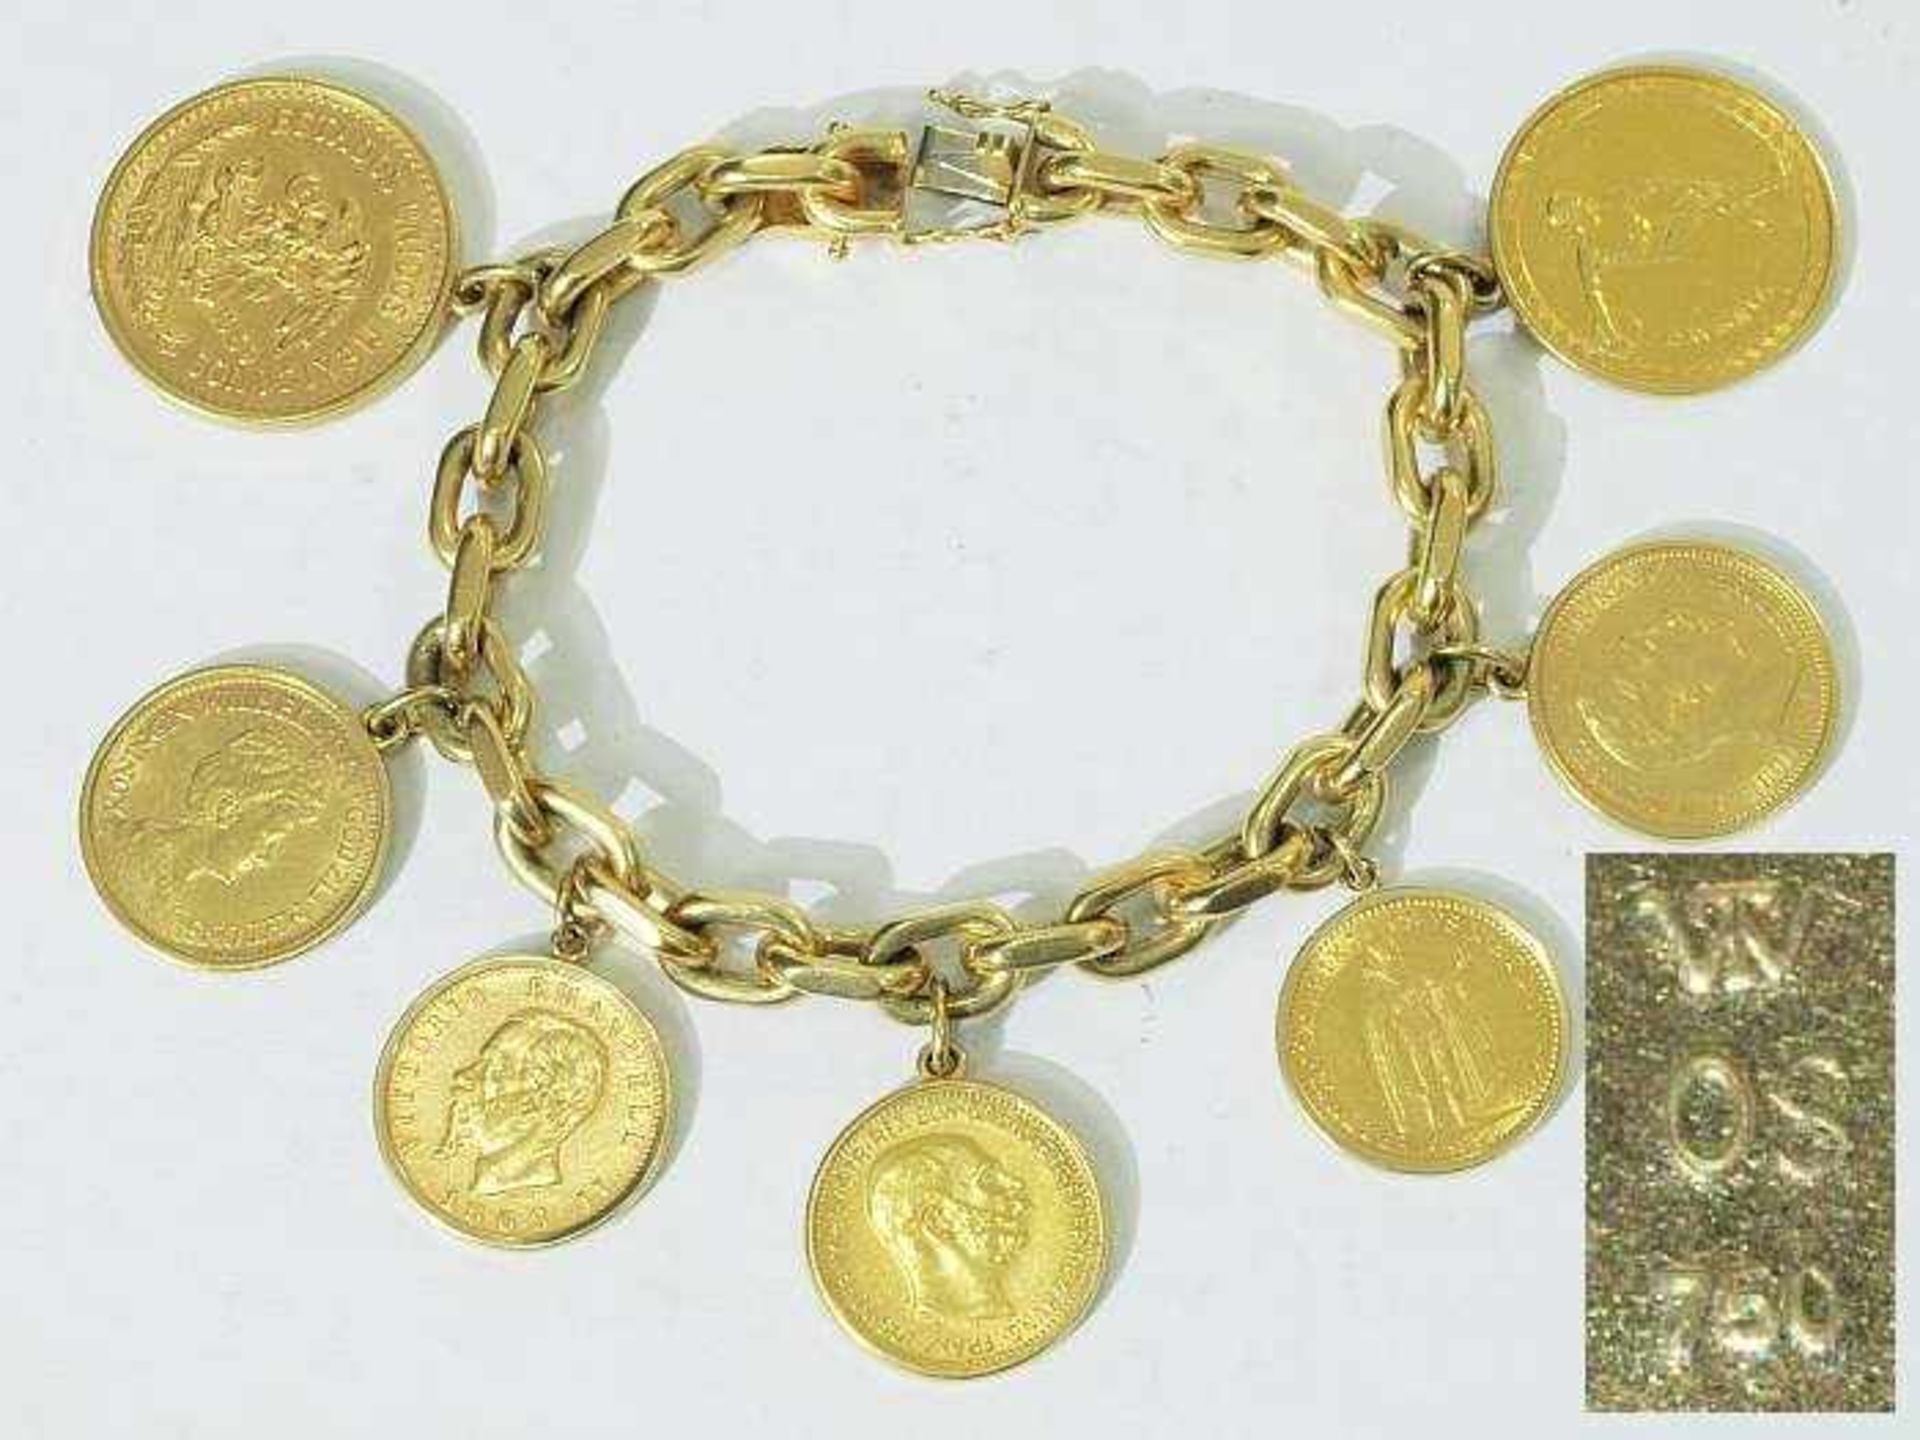 Armband mit 7 Goldmünzen. Armband mit 7 Goldmünzen (massives Bettelarmband). Massives Armband